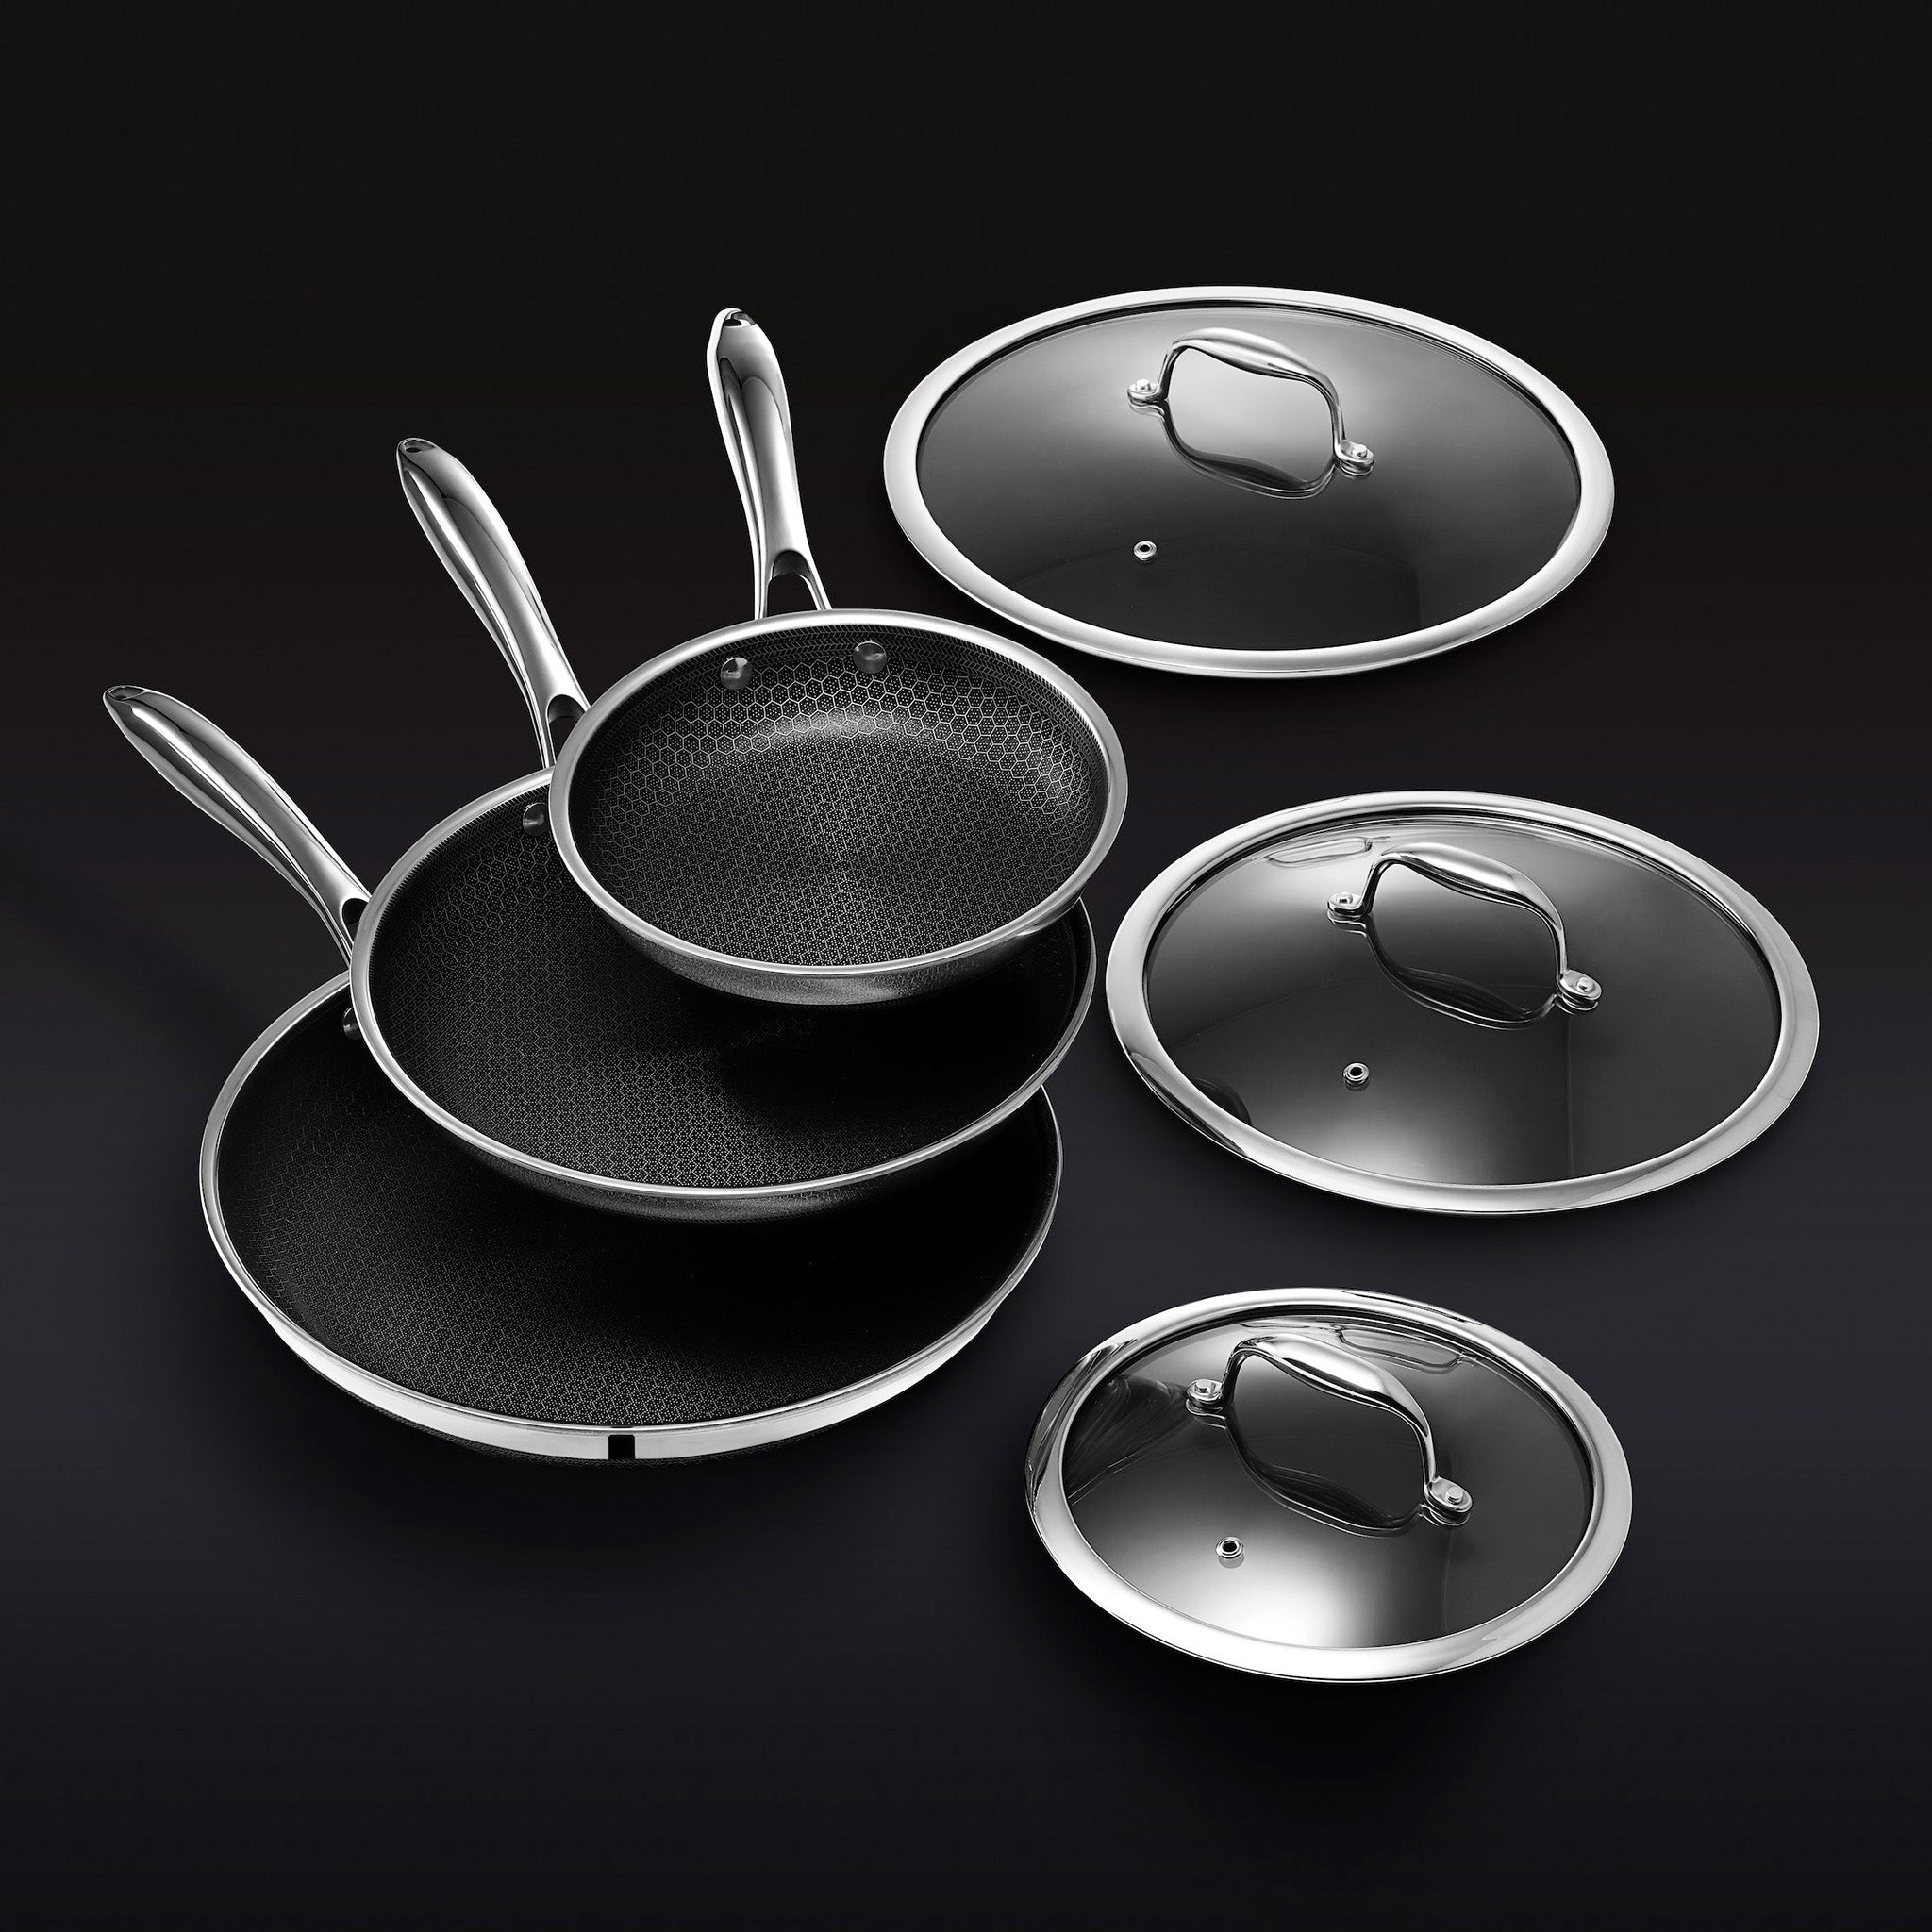 HexMill Tabletop Salt & Pepper Grinder Set – HexClad Cookware